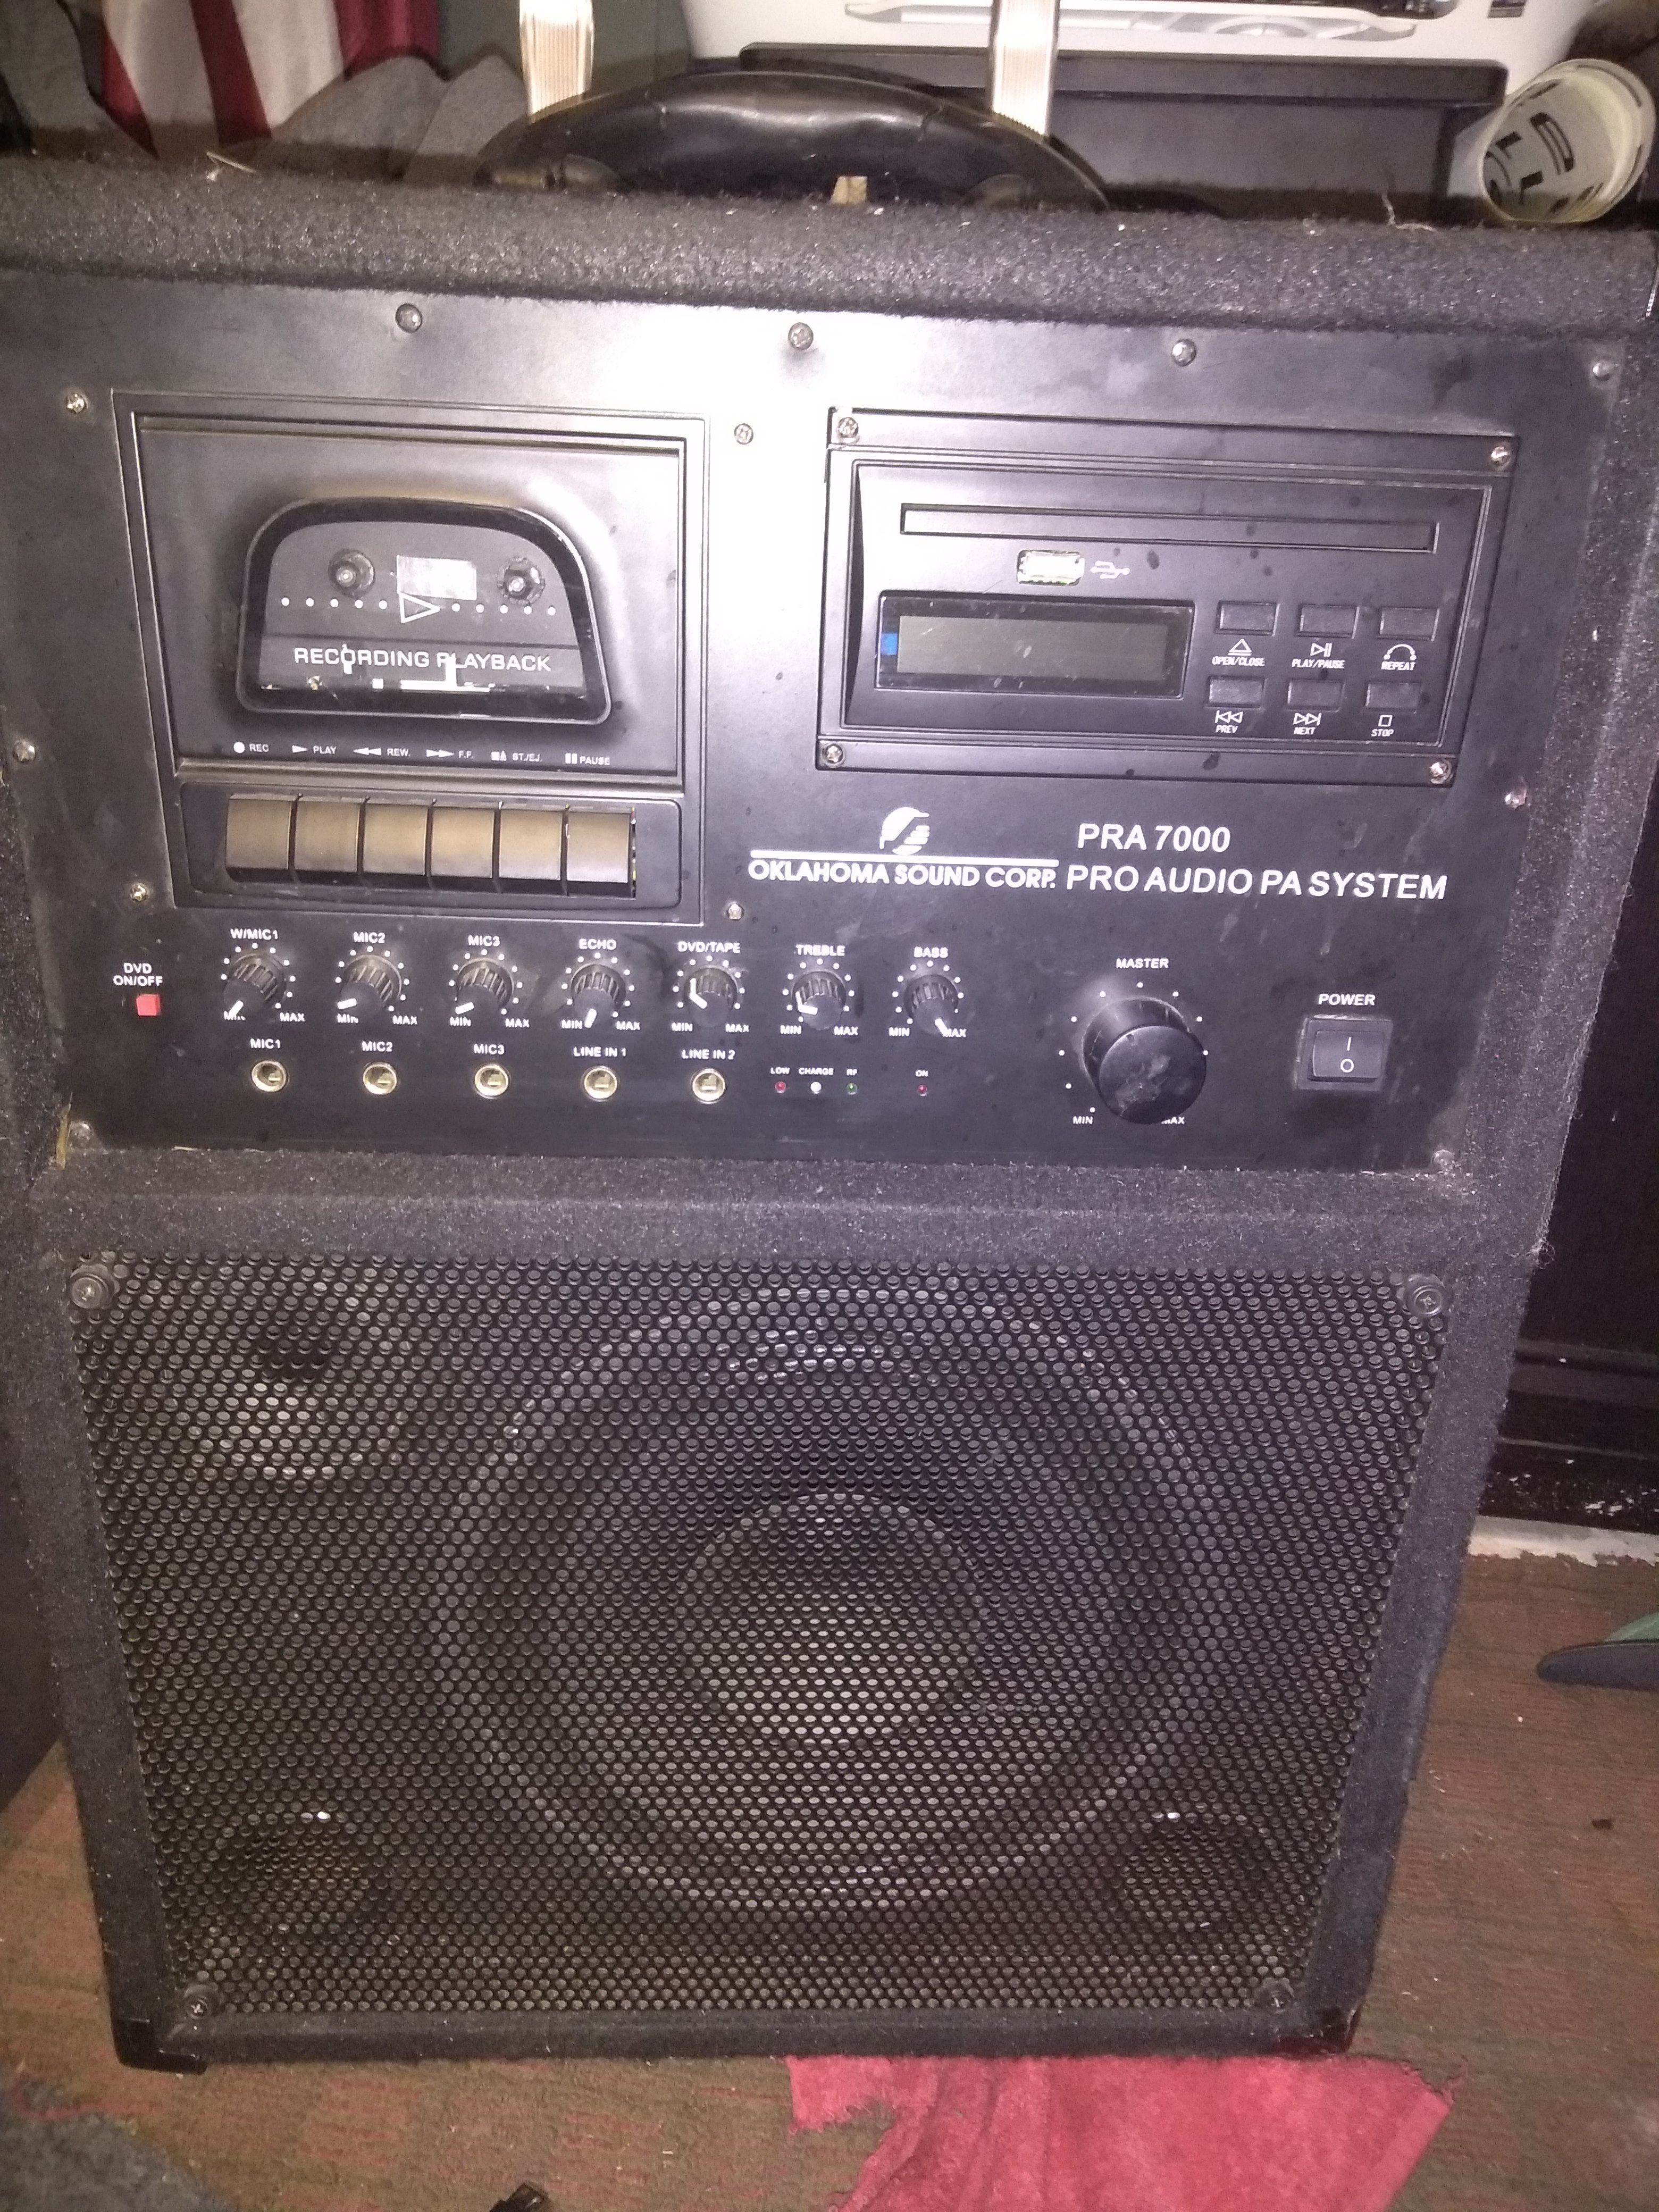 Pra 7000 Oklahoma sound Corp... Pro audio/PA system